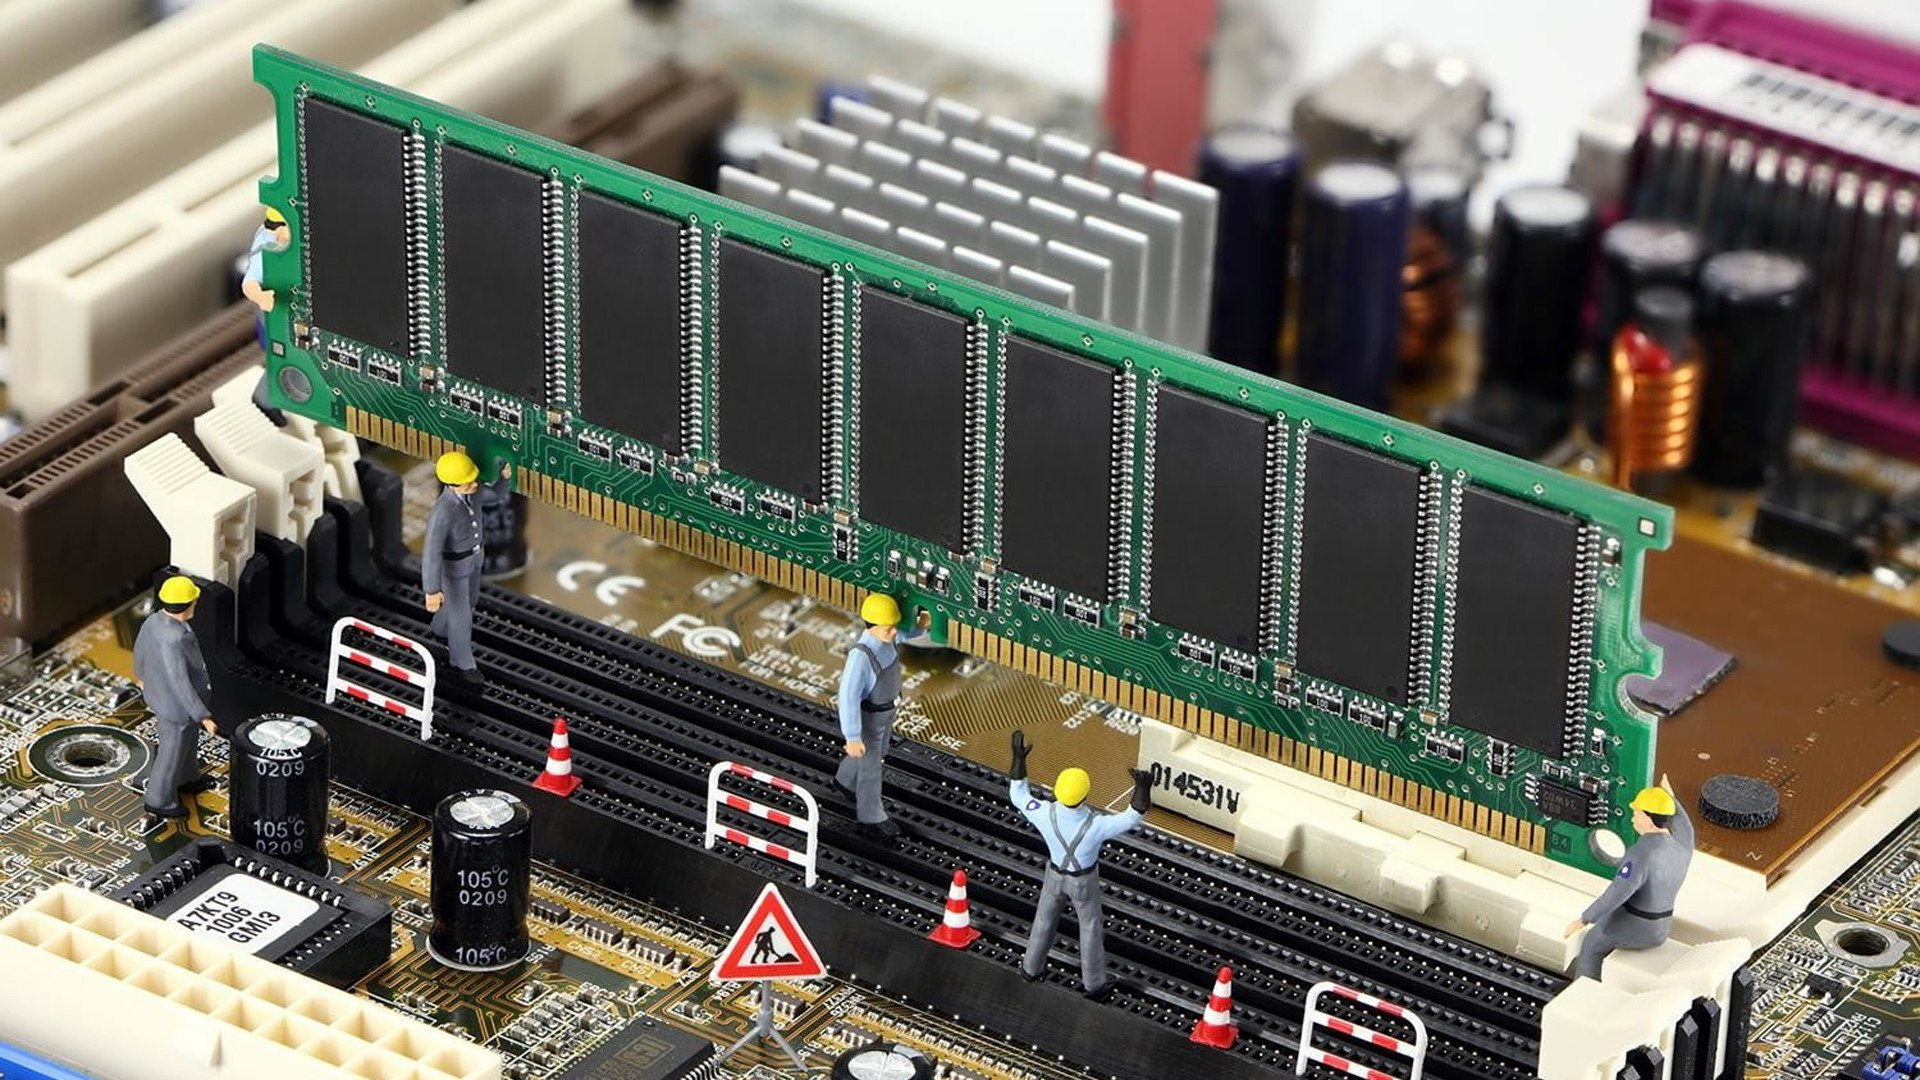 Nâng cấp RAM giúp máy hoạt động ổn định hơn